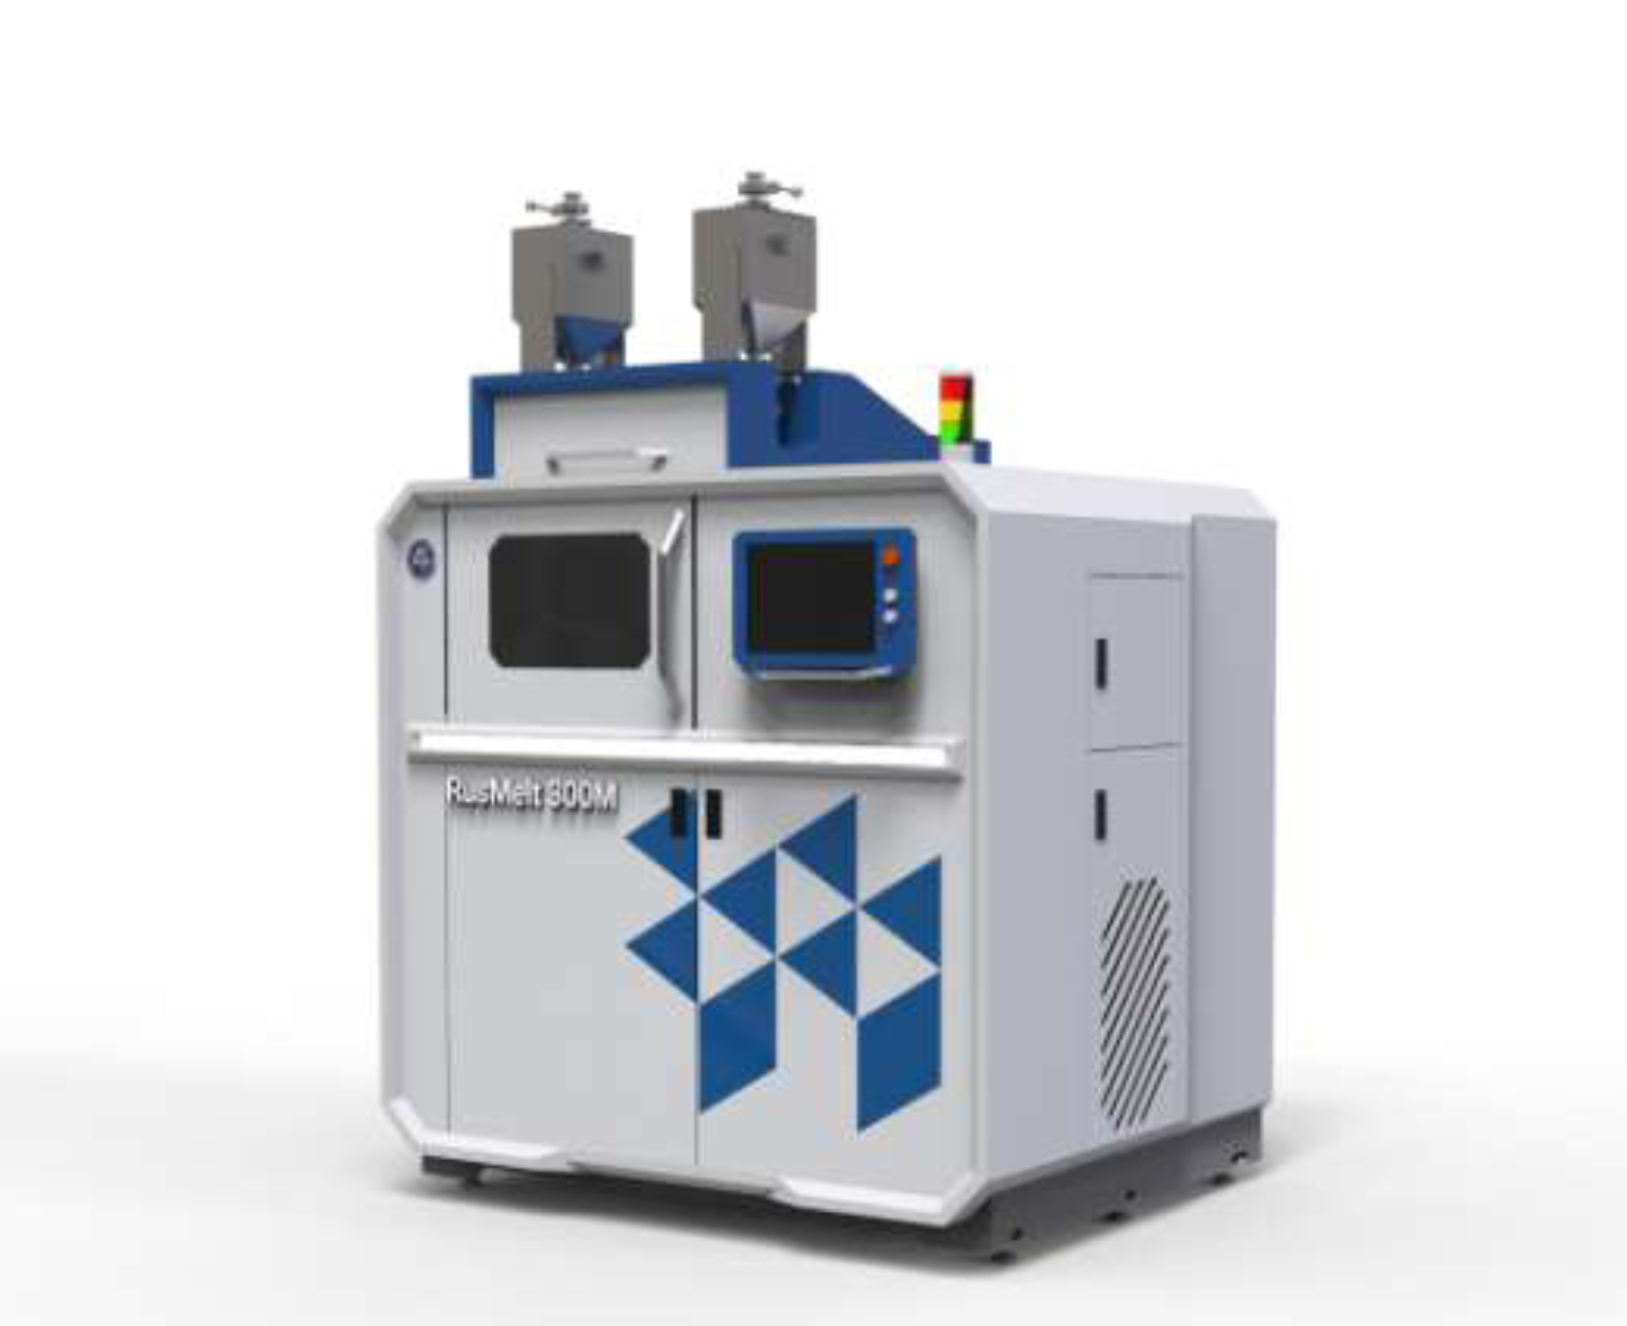 В НПО «Центротех» изготовлены машинокомлекты  3D-принтеров RusMelt-600